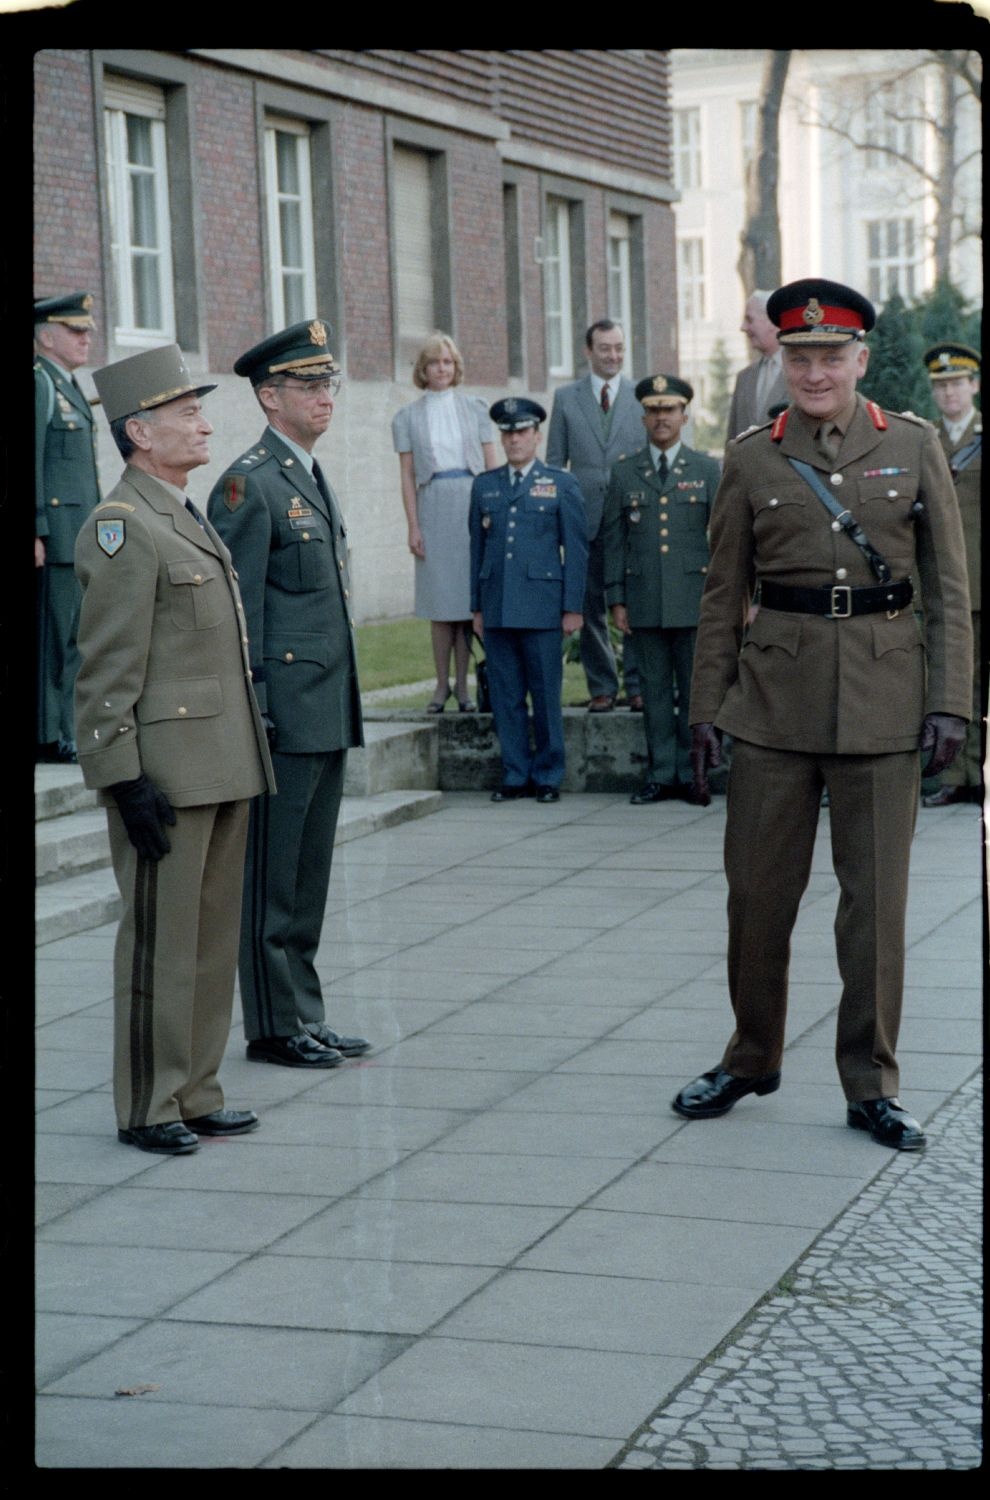 Fotografie: Verabschiedung von Major General Bernard Gordon Lennox, britischer Stadtkommandant, in der Alliierten Kommandantur in Berlin-Dahlem (AlliiertenMuseum/U.S. Army Photograph Public Domain Mark)